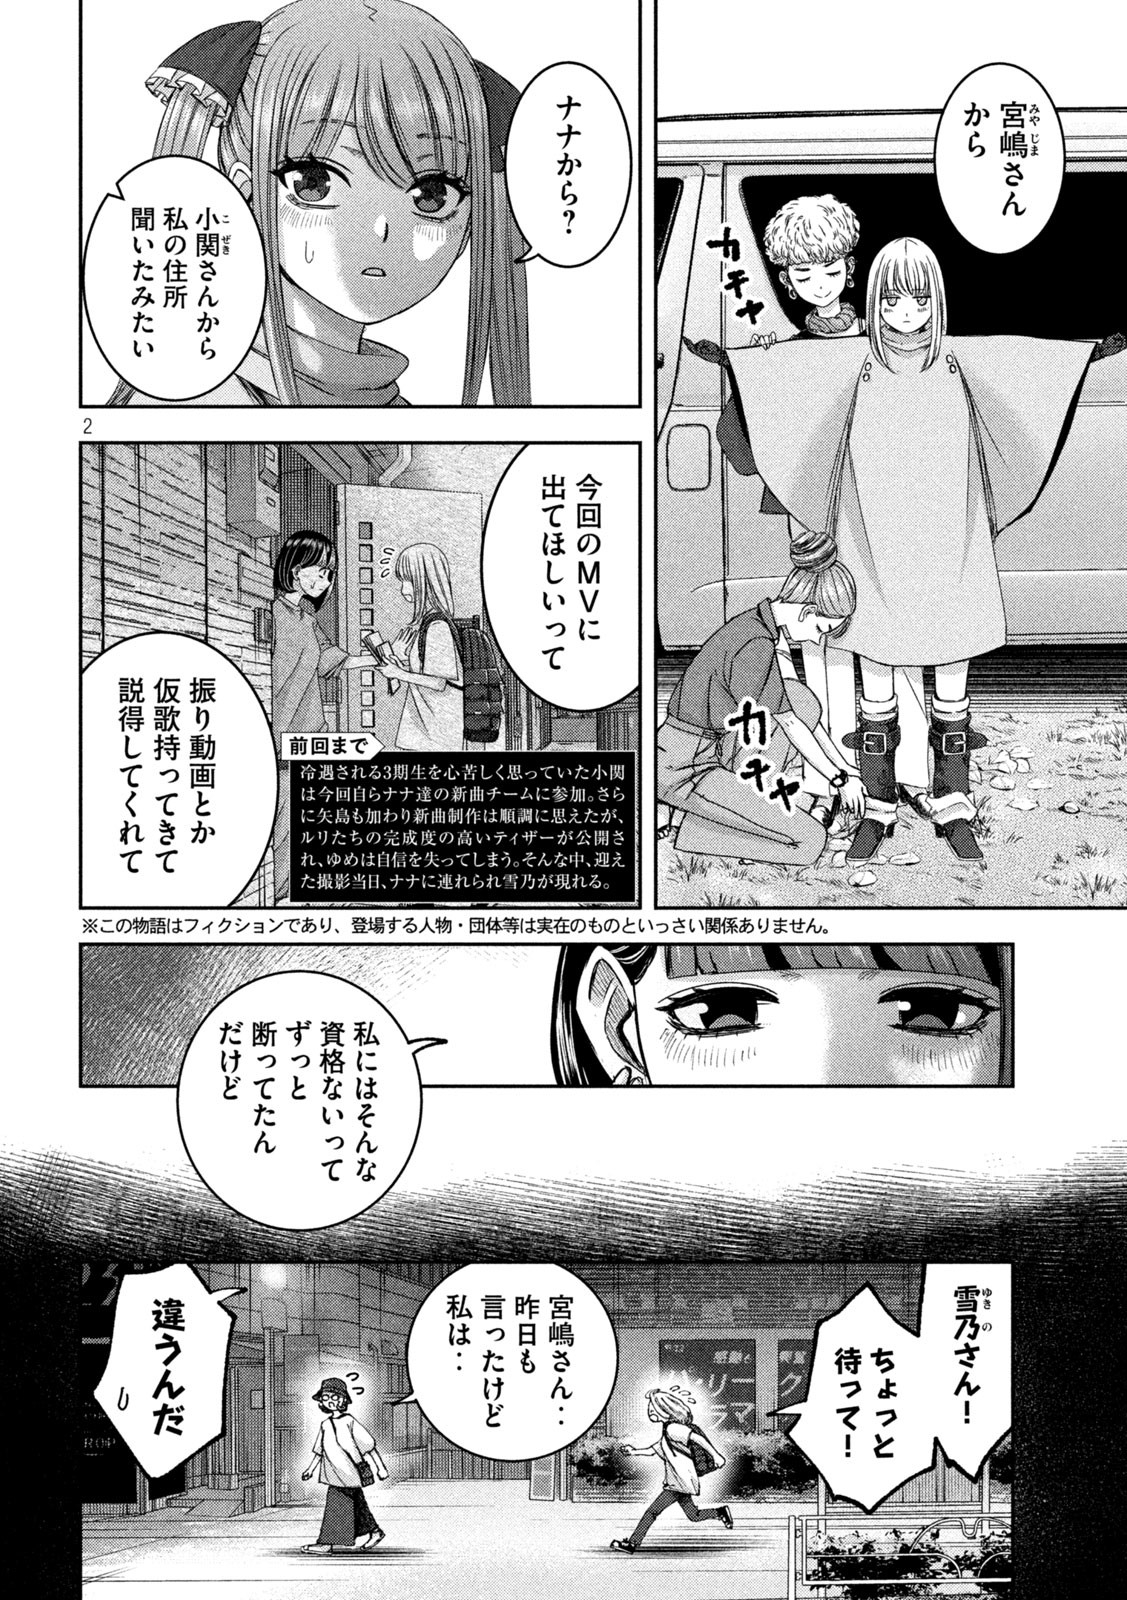 Watashi no Arika - Chapter 40 - Page 2